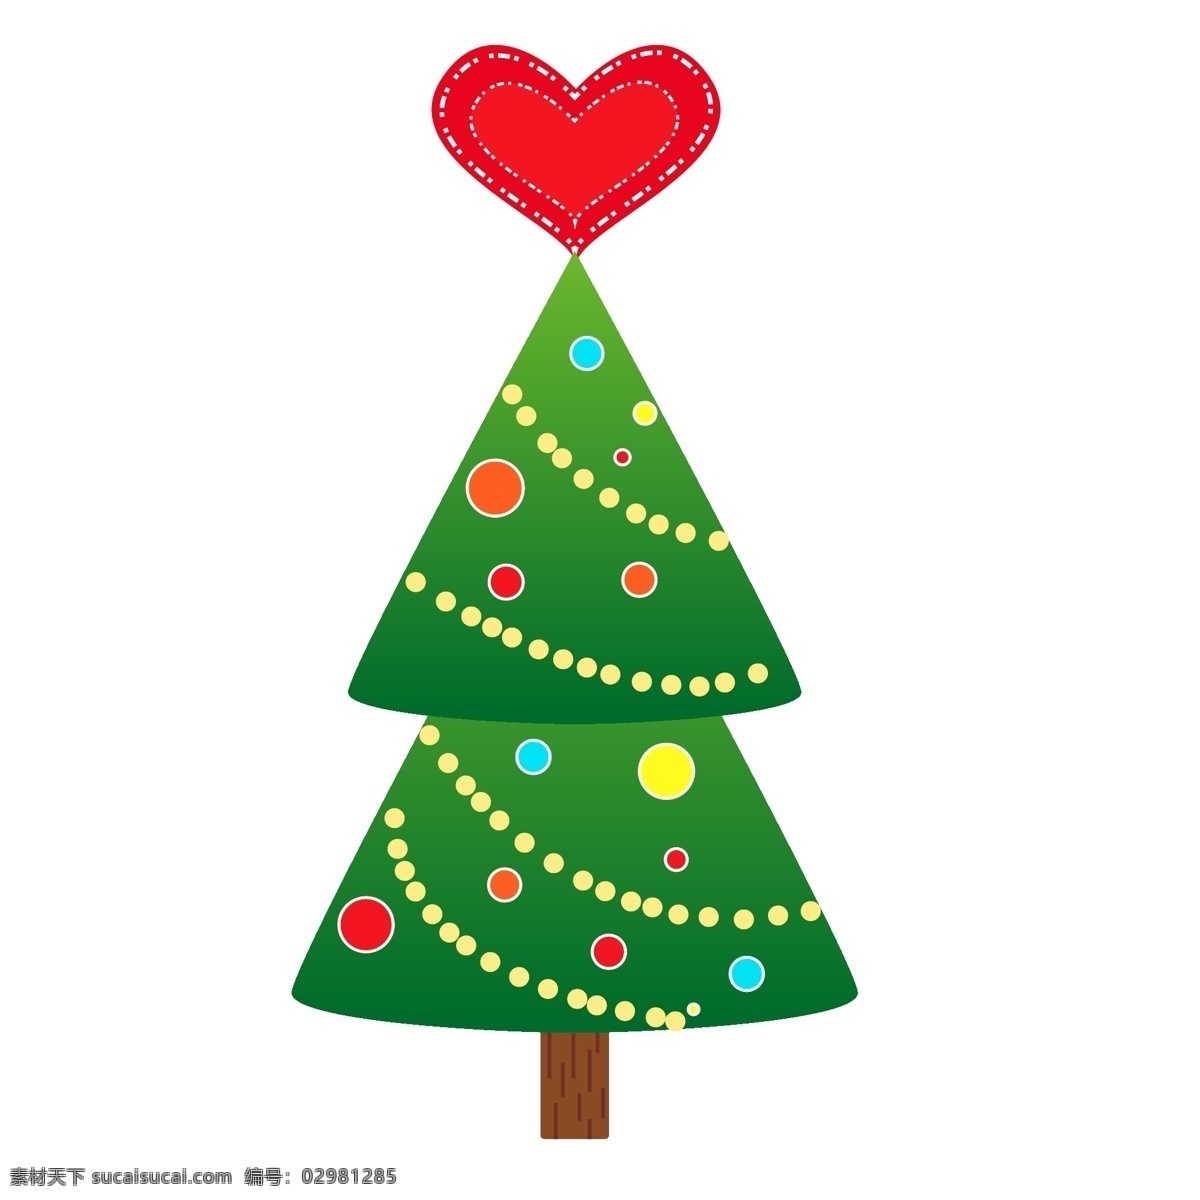 圣诞节 圣诞树 圣诞 元素 插画 圣诞夜 红绿色系 卡通插画风格 海报 banner